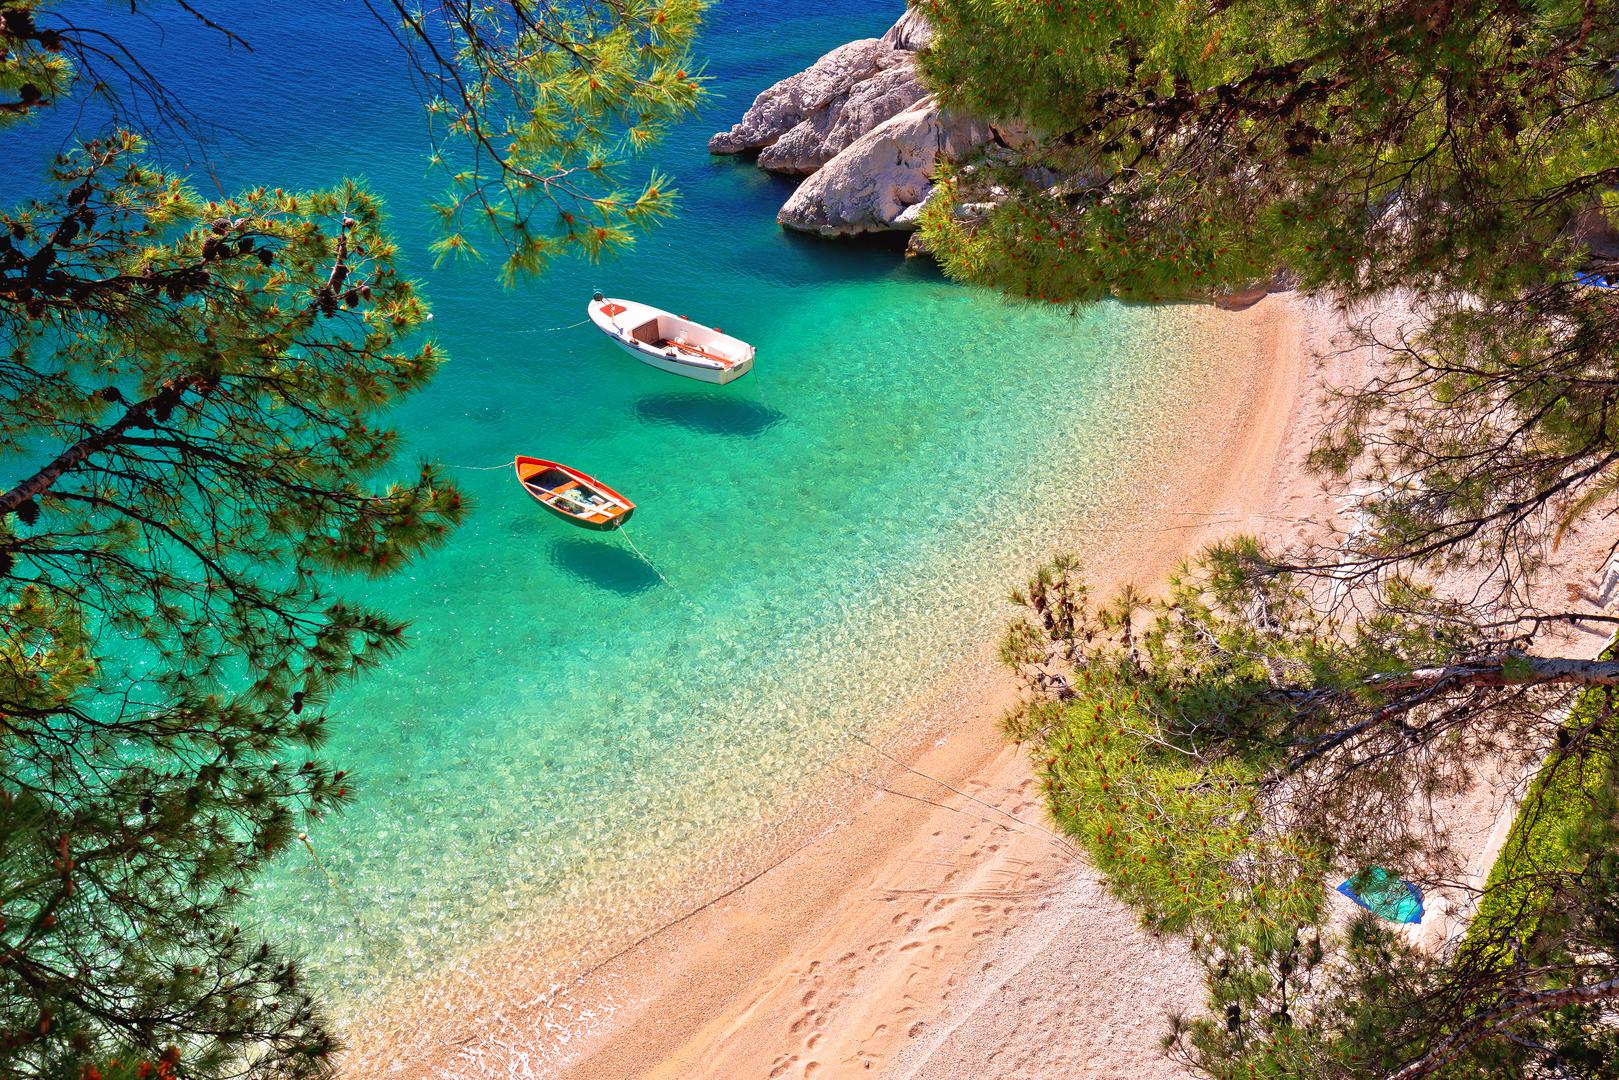 Mnogi posjetitelji Hrvatske koji tu zemlju posjećuju prvi put zadivljeni su zapanjujućim prizorima tirkiznog mora i činjenicom da se često može vidjeti morsko dno, pa čak i u dubljim vodama. Zahvaljujući 1.777 km dugoj jadranskoj obali s preko 1.200 otoka, Hrvatska ima brojne prekrasne plaže, a samo je pitanje hoćete li više voljeti stjenovite ili pješčane. Popularni turistički vodič Lonely Planet odabrao je 14 najboljih plaža u Hrvatskoj. 